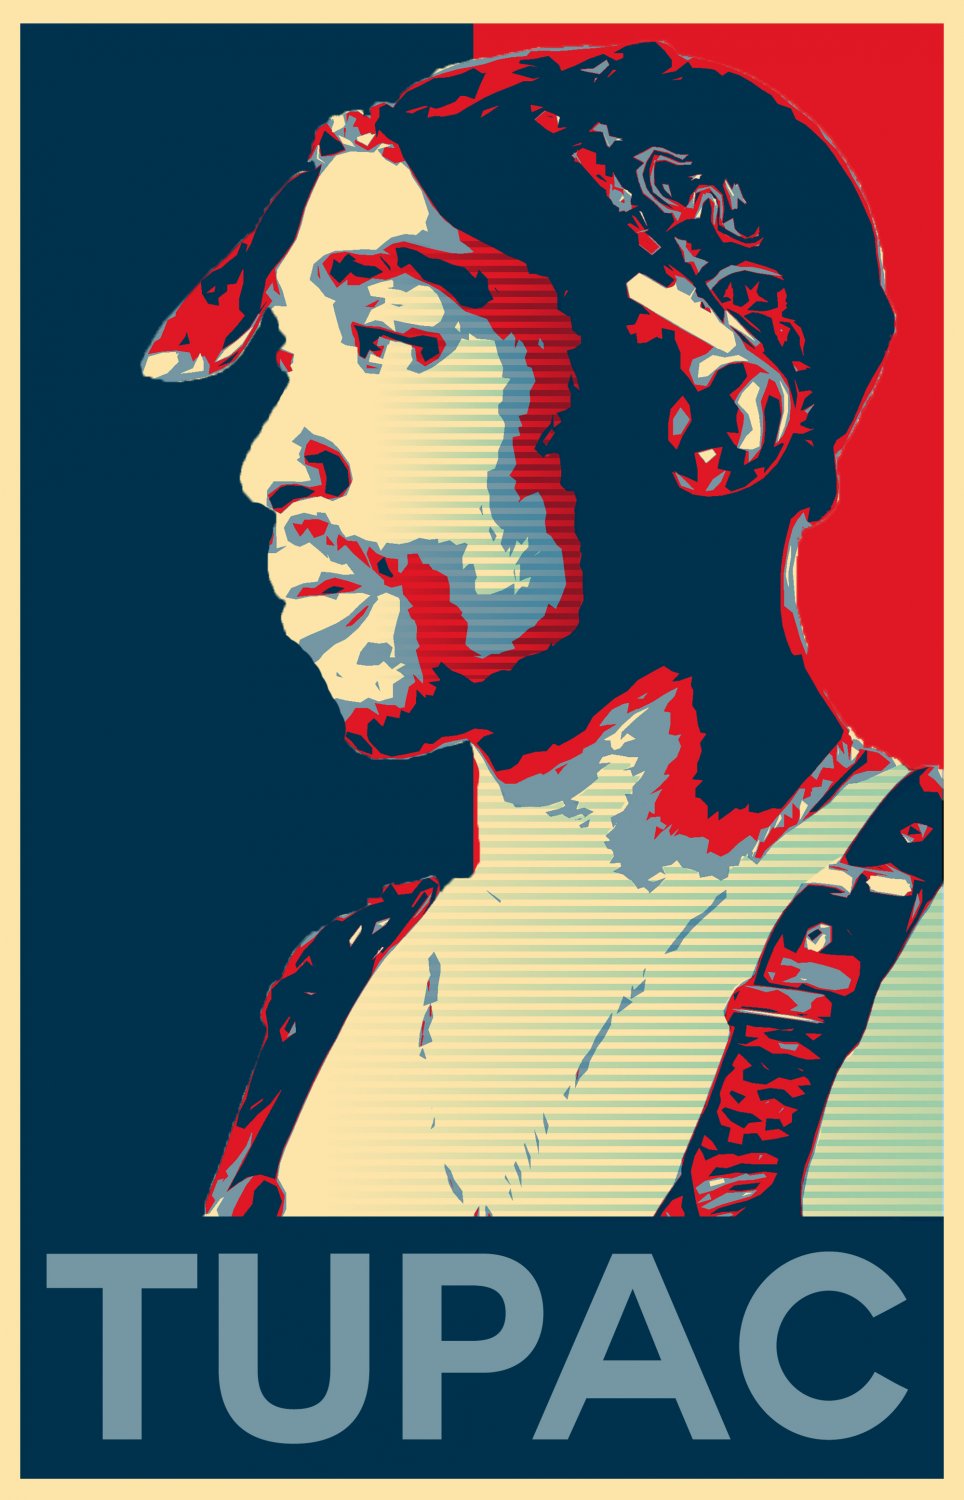 Tupac Shakur  2 Pac  18"x28" (45cm/70cm) Poster